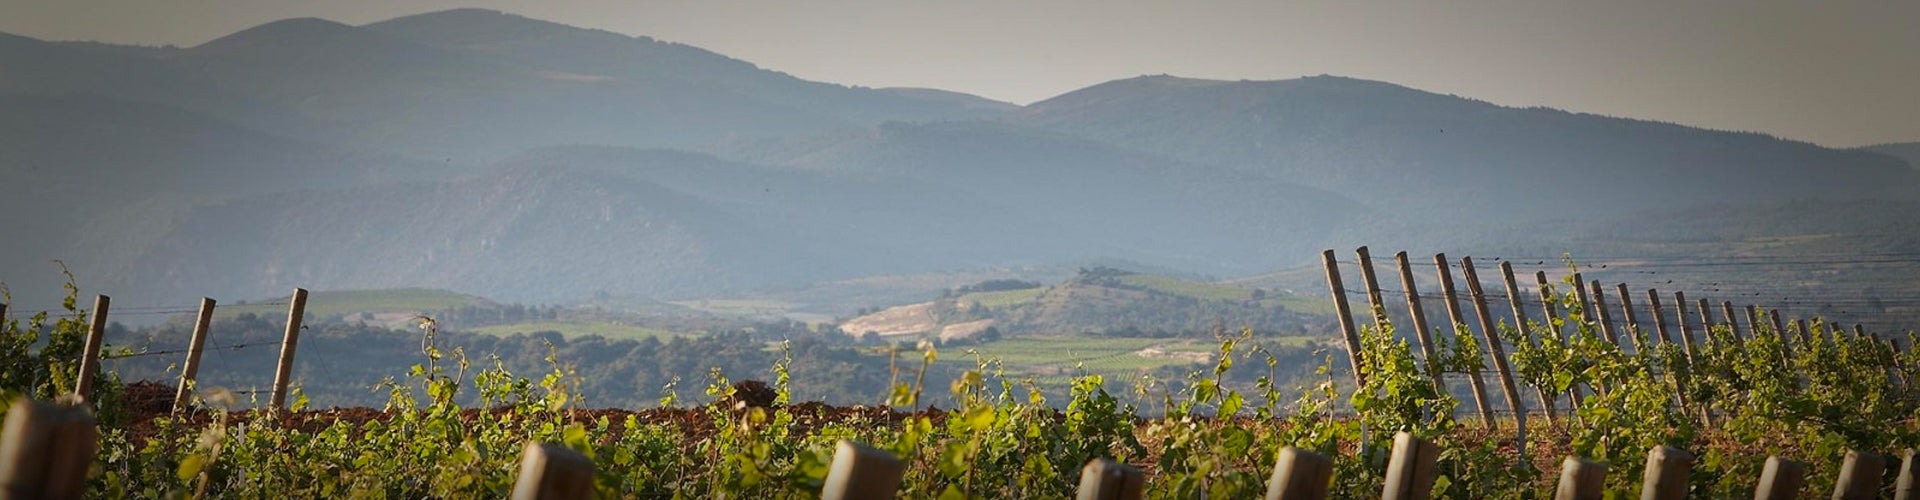 Domaine de L'Ostal Vineyards in the Minervois region of Languedoc, France